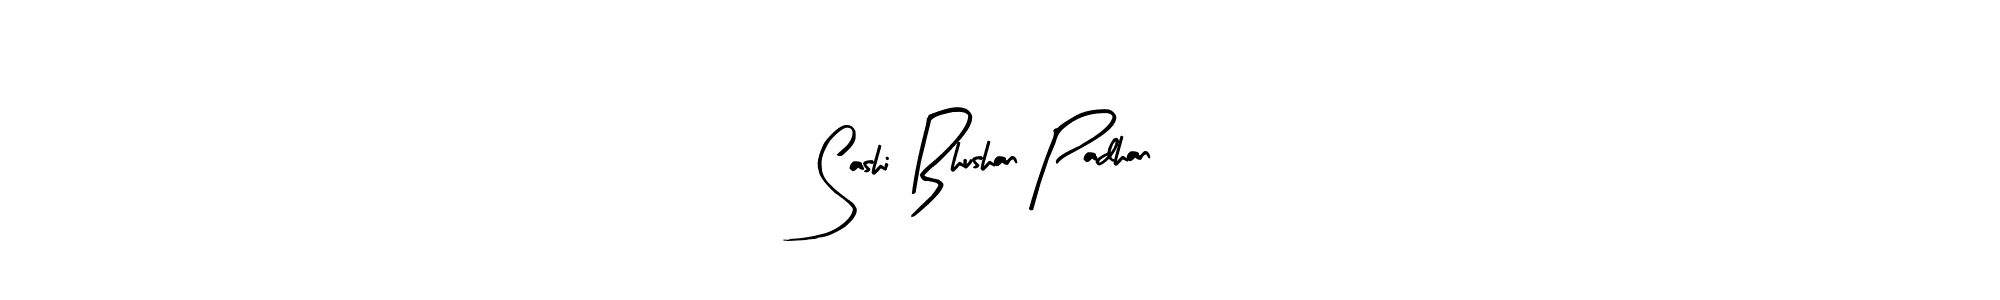 How to Draw Sashi Bhushan Padhan signature style? Arty Signature is a latest design signature styles for name Sashi Bhushan Padhan. Sashi Bhushan Padhan signature style 8 images and pictures png